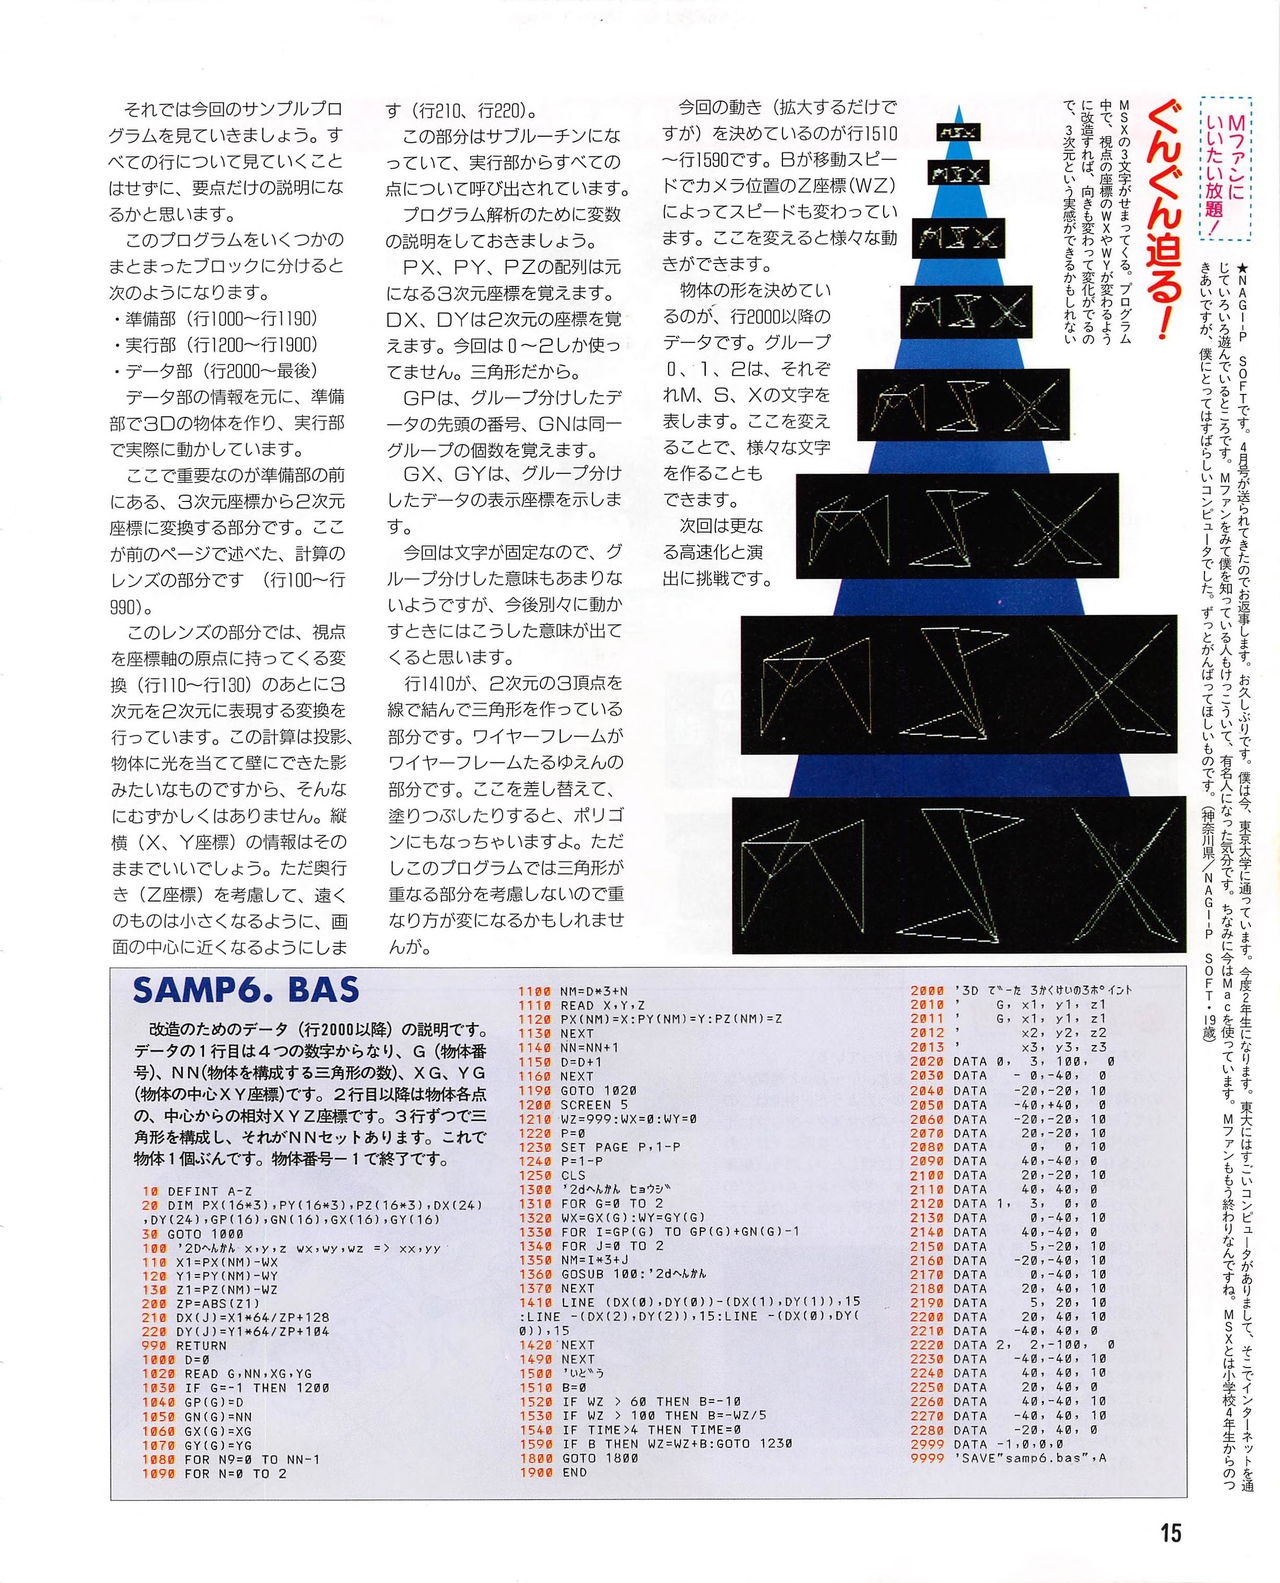 MSX Fan 1995-06 14